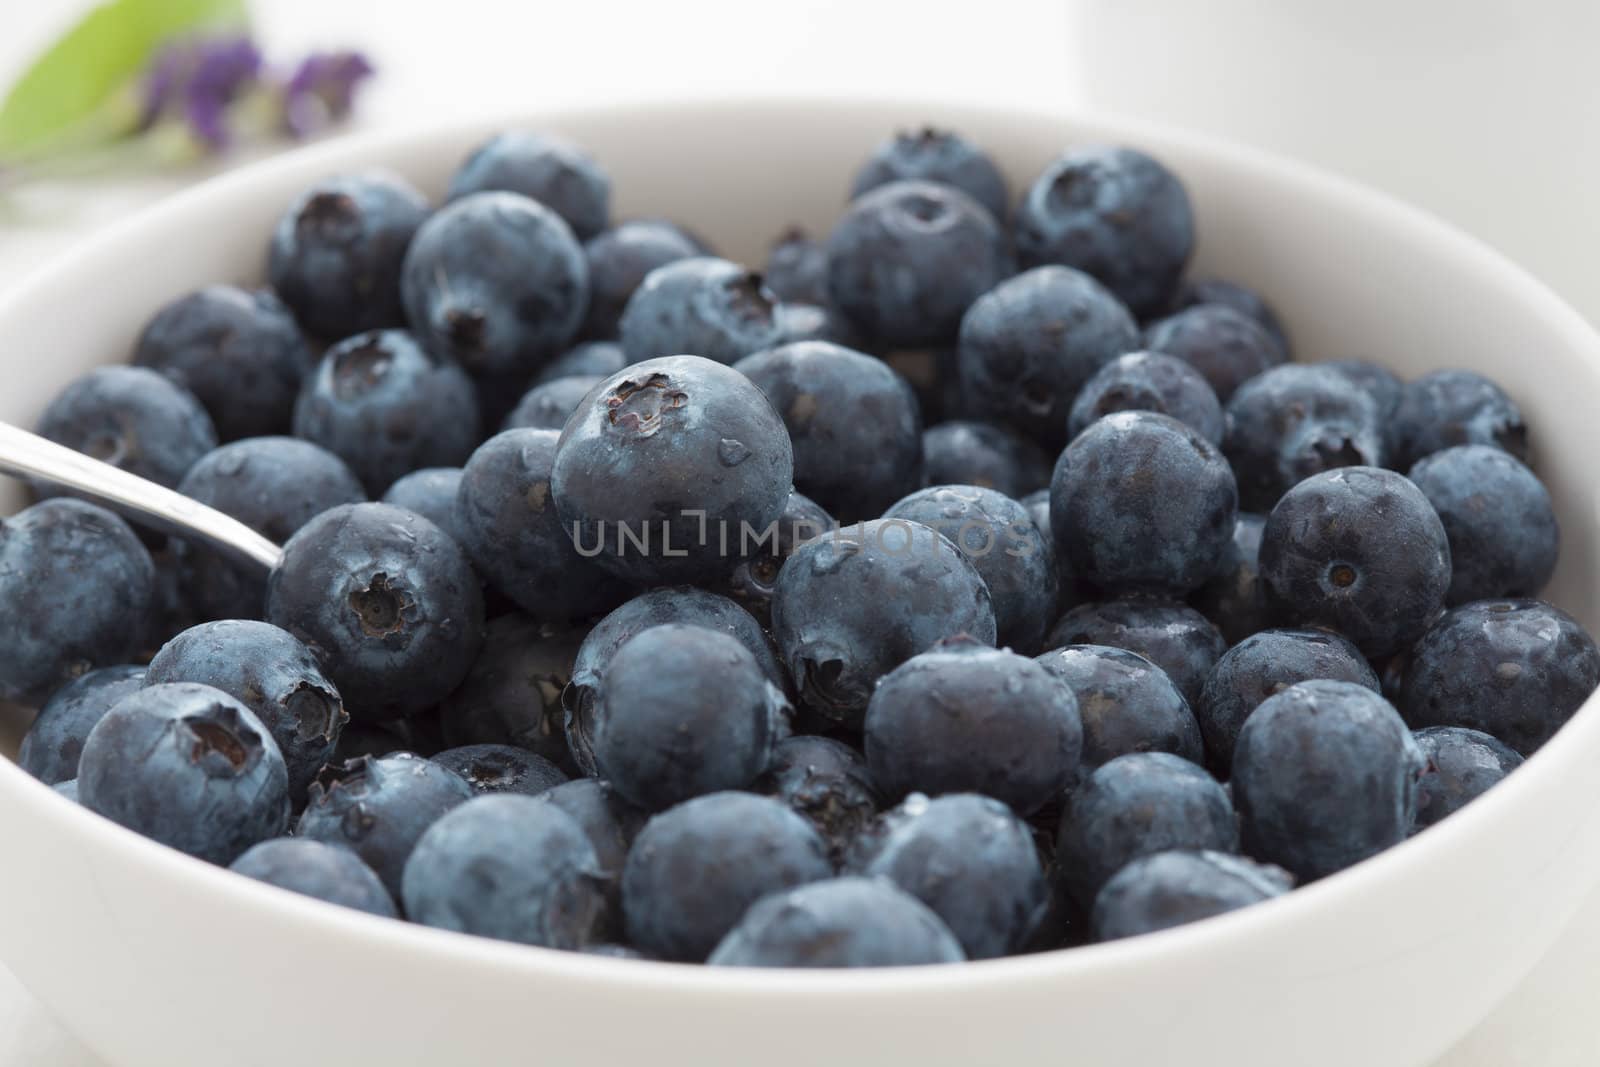 Fresh juicy blueberries by biitli